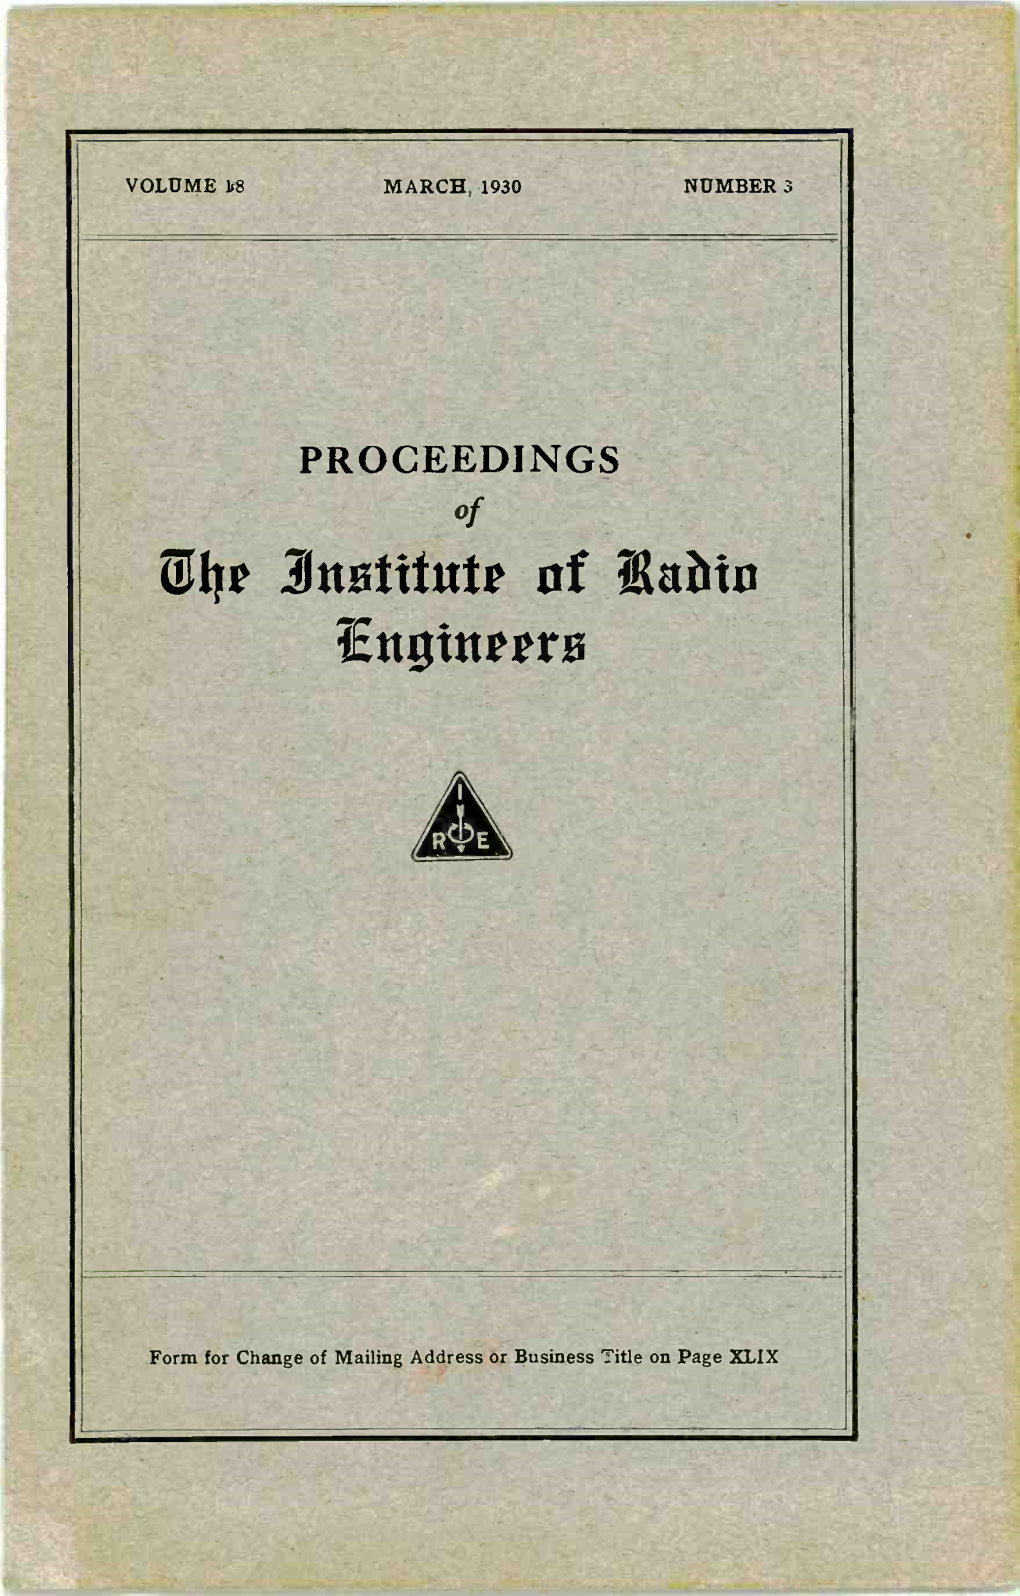 041 3Nstitute of Edith Engineers